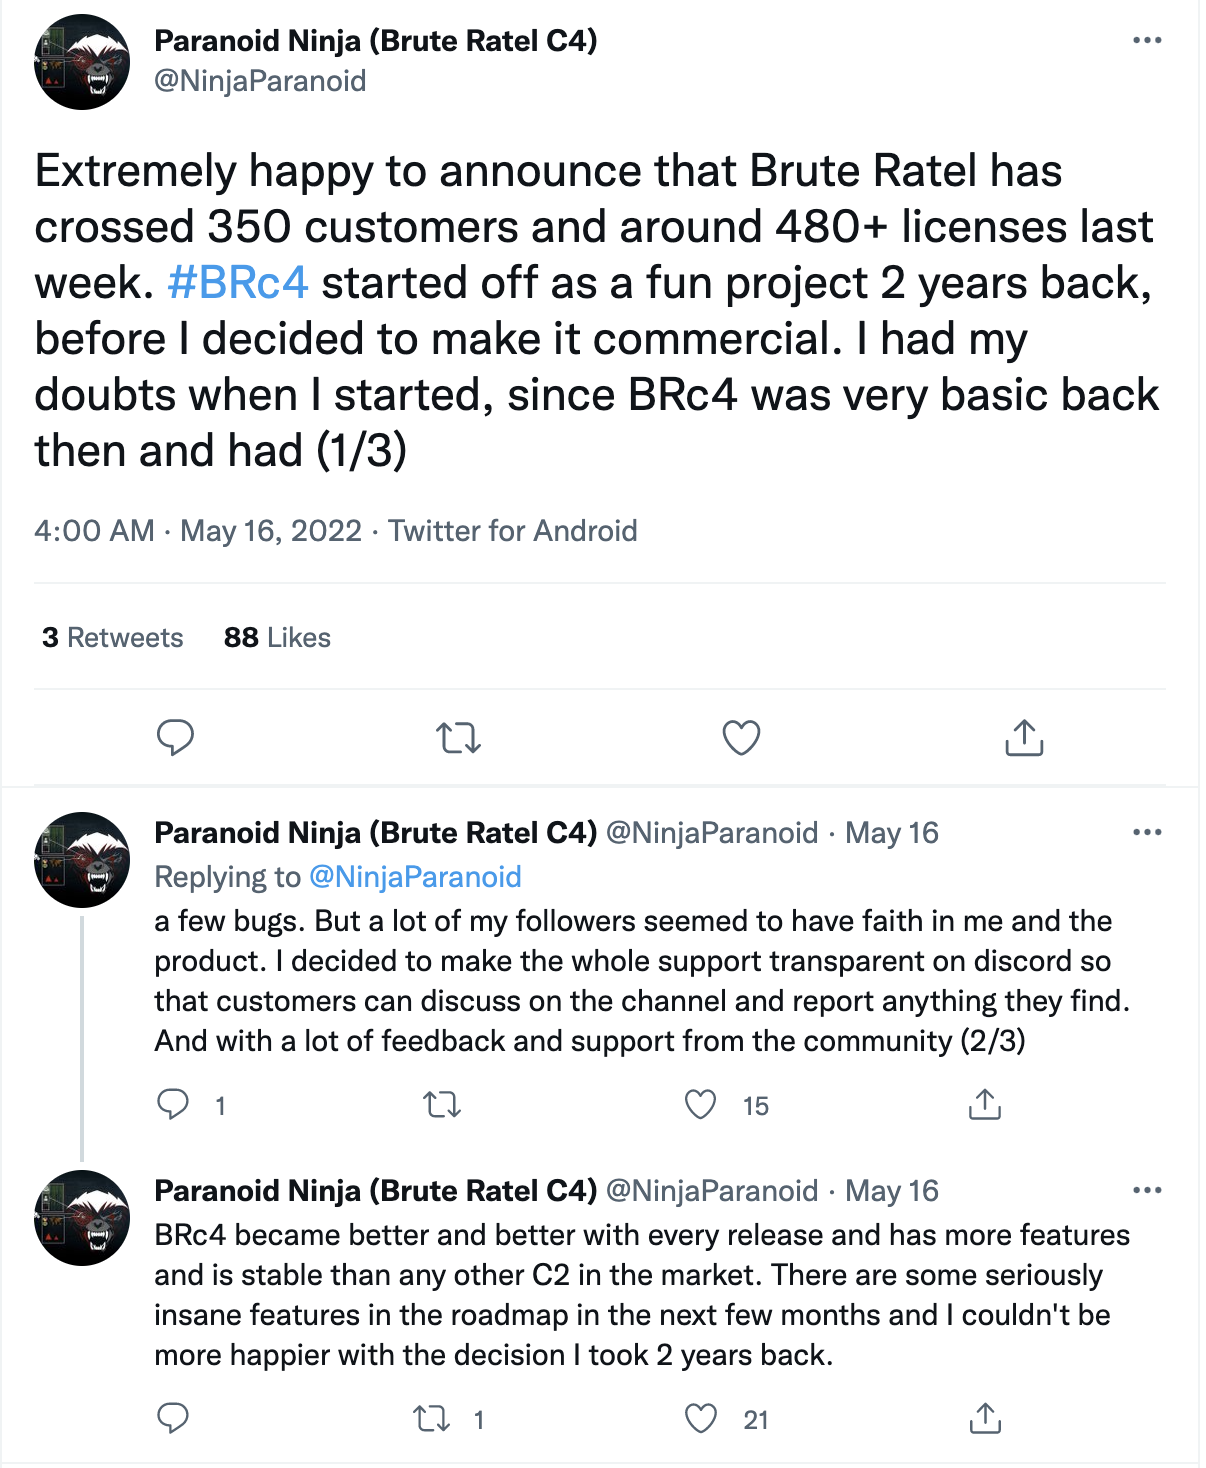 Paranoid Ninja (Brute Ratel C4)のTwitter投稿。「前週Brute Ratelの顧客数が350を超えライセンス数も480を超えたことを発表でき非常にうれしい」#BRc4 は2年前、趣味のプロジェクトとして始まったもので、その後商用化することにしました。当初のBRc4はほんとうにベーシックな機能しかなく、バグも少なくなかったので、始めたときはその後どうなるかについてそれ相応の不安もありました。ただ、多くのフォロワーさんが私と製品に信頼を寄せてくれているようでした。お客様がチャンネルで議論して何かあれば報告できるよう、Discordでのサポート全体を透明化することにしました。コミュニティからの多くのフィードバックとサポートのおかげで、BRc4はリリースごとに改良され、市場のどのC2より多くの機能を持ち、安定するようになりました。今後数ヶ月のロードマップには、とんでもない数の機能が待っています。